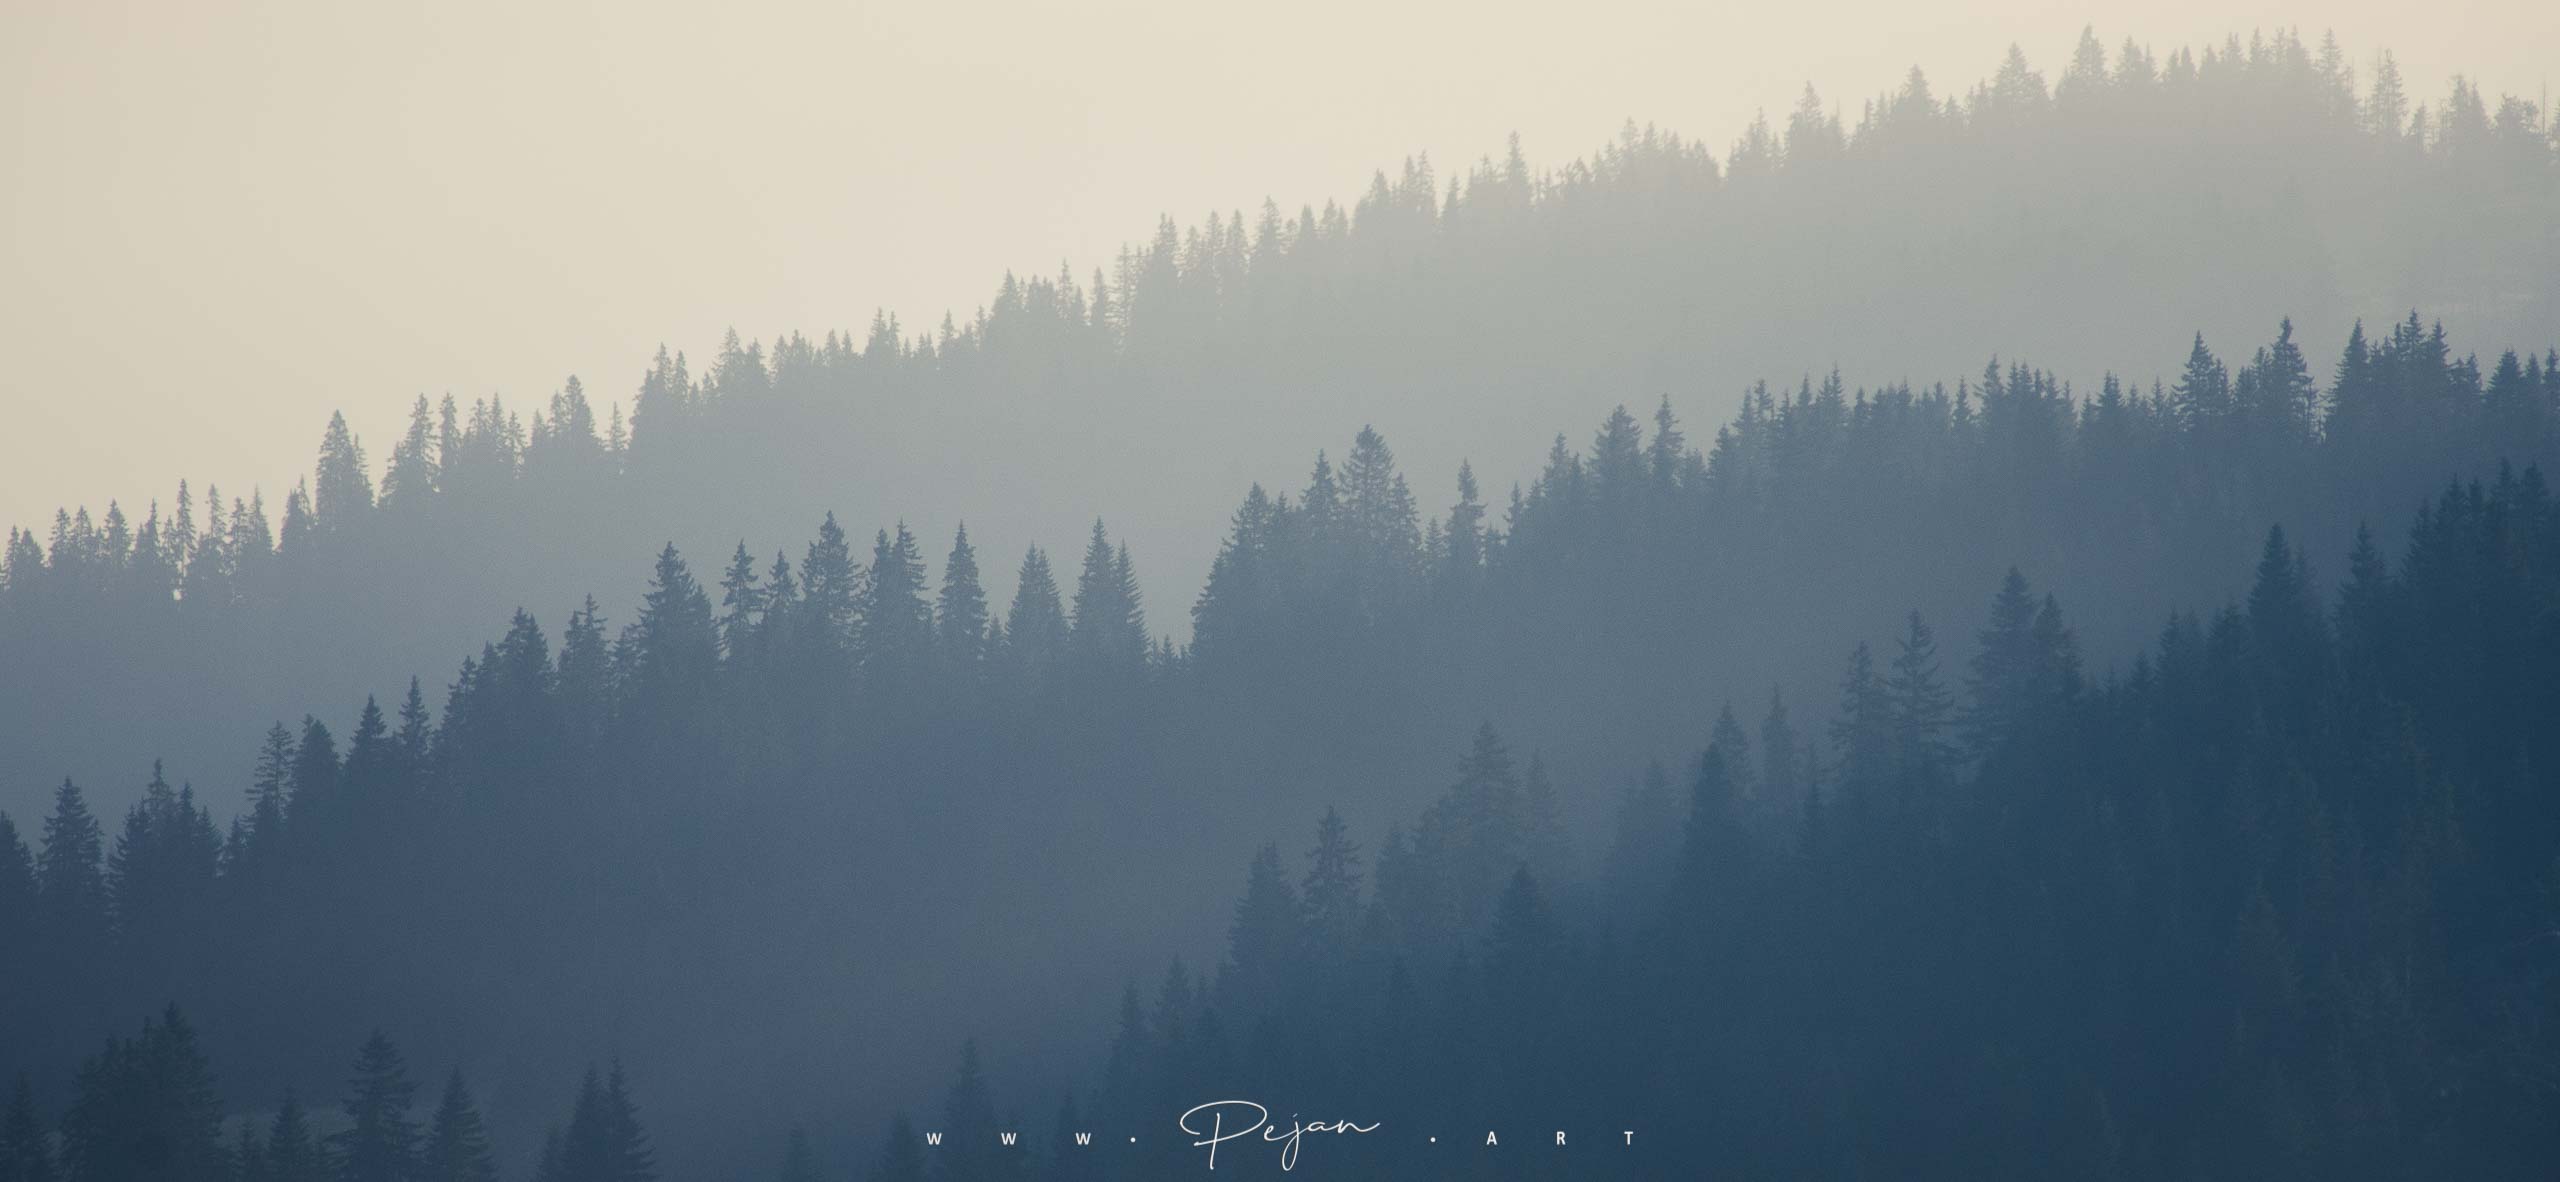 Dégradé de bleu, vue sur les forêt des montagnes entre le Monténégro et le Kosovo. Silhouettes de sapins dans la brume.